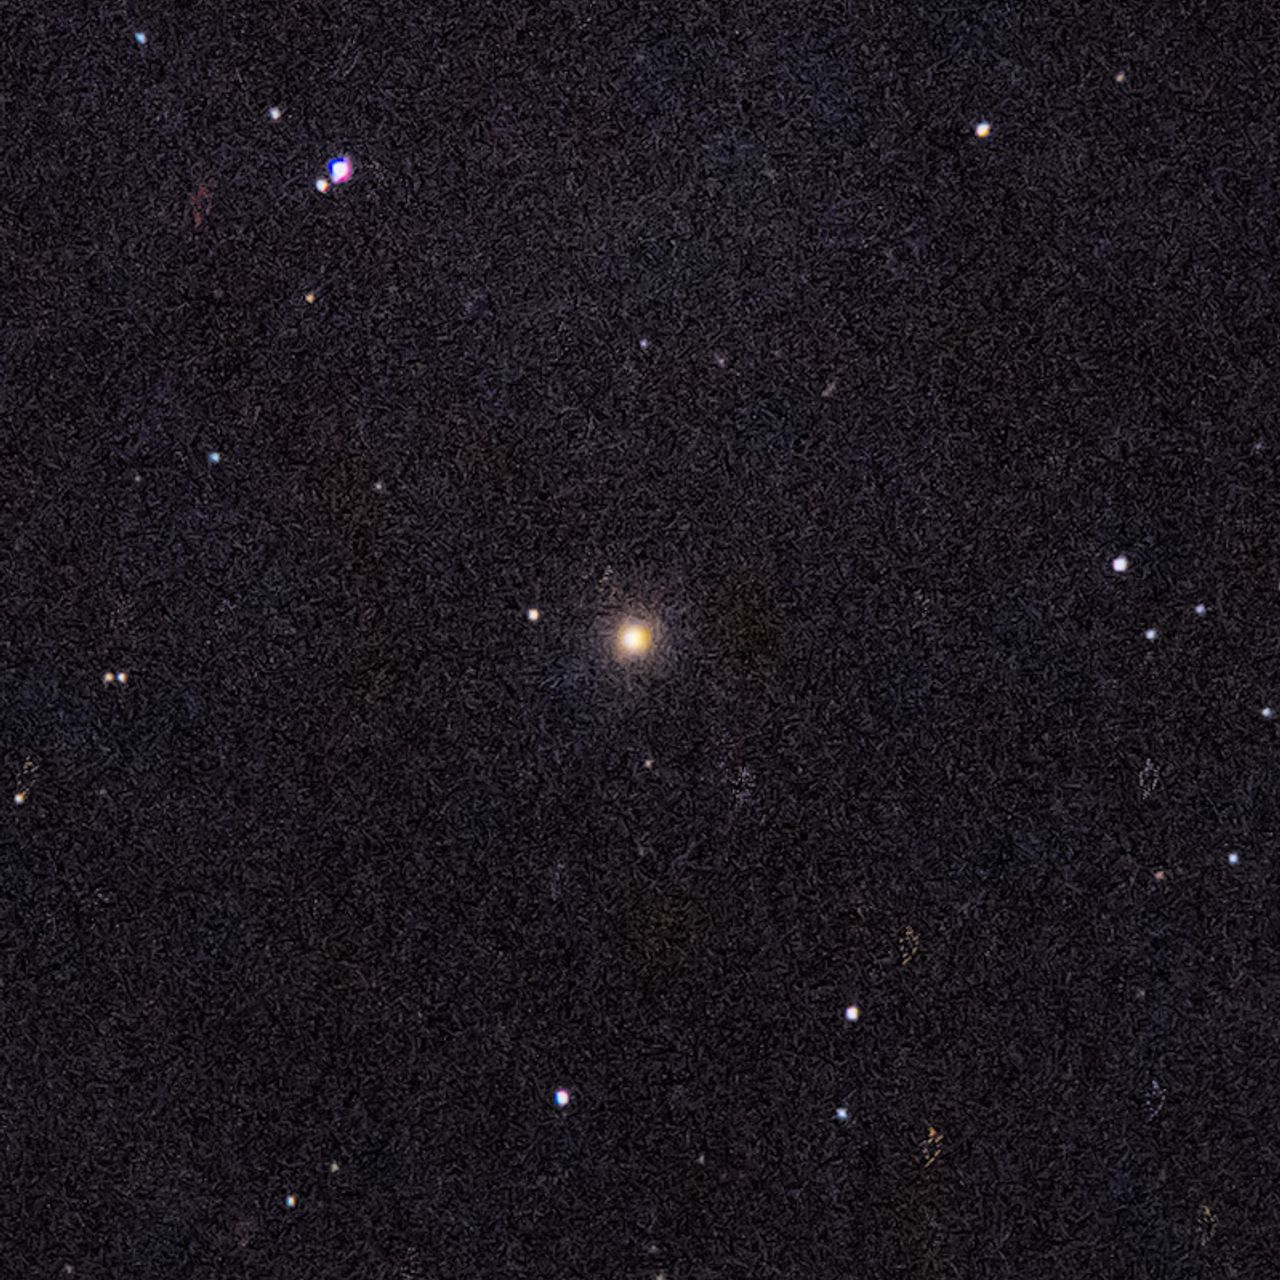 M89